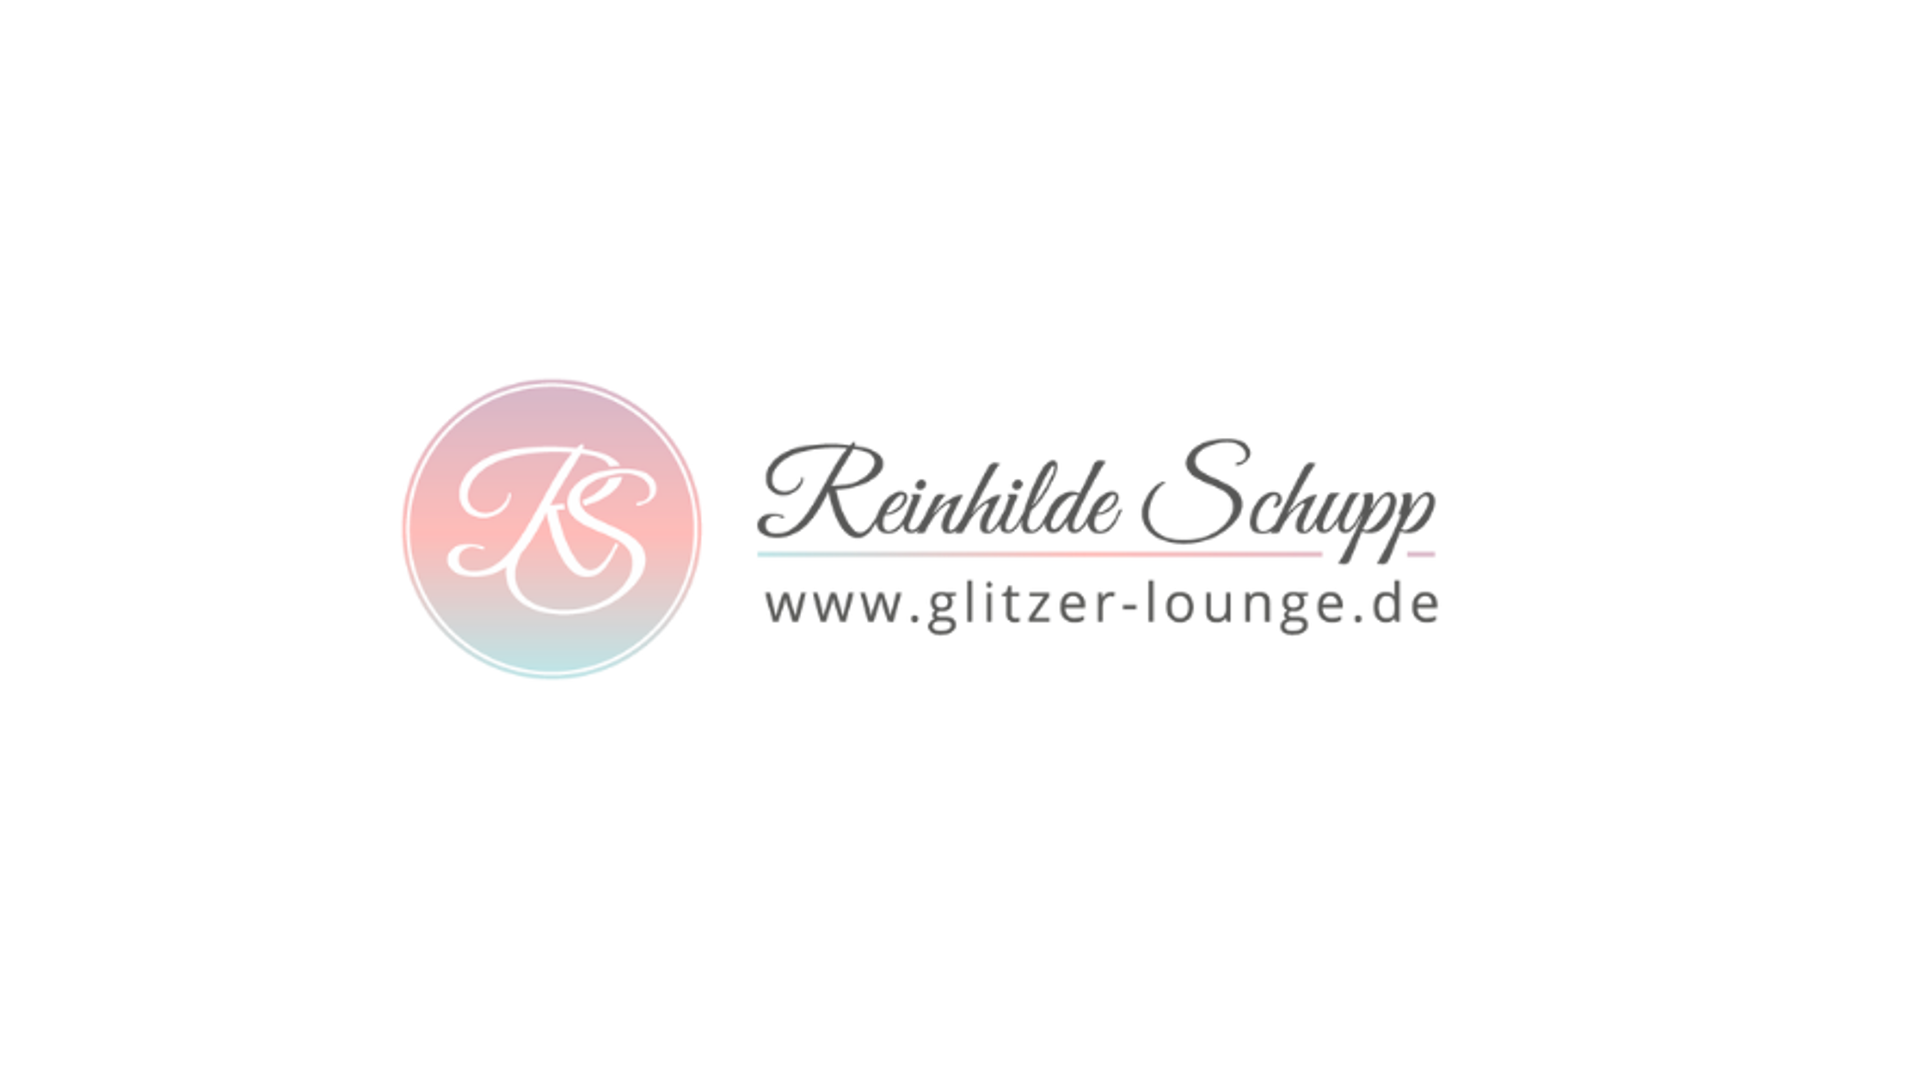 Reinhilde Schupp - Glitzer-Lounge 